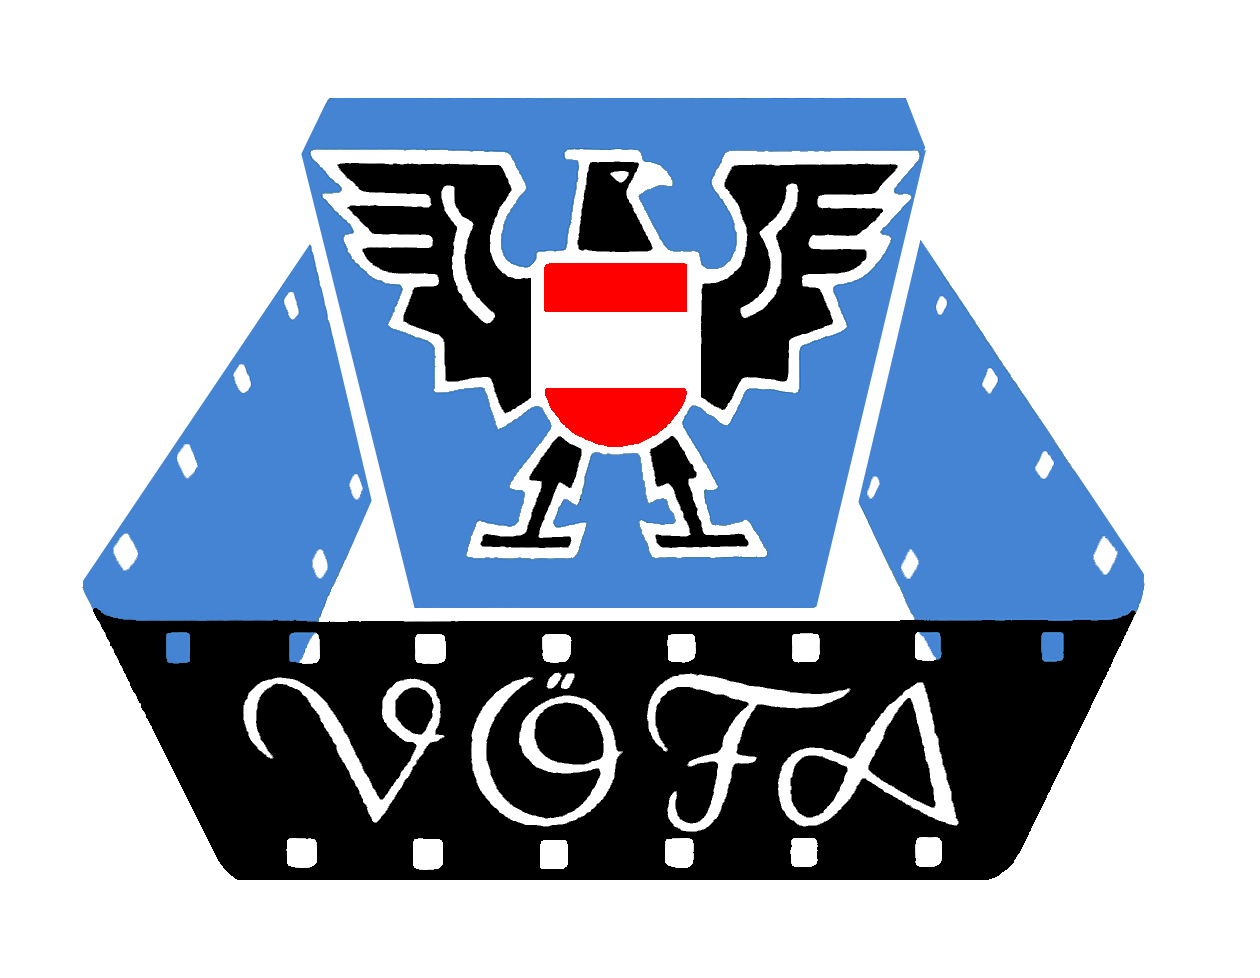 aktivas versicherungsmakler voefa logo